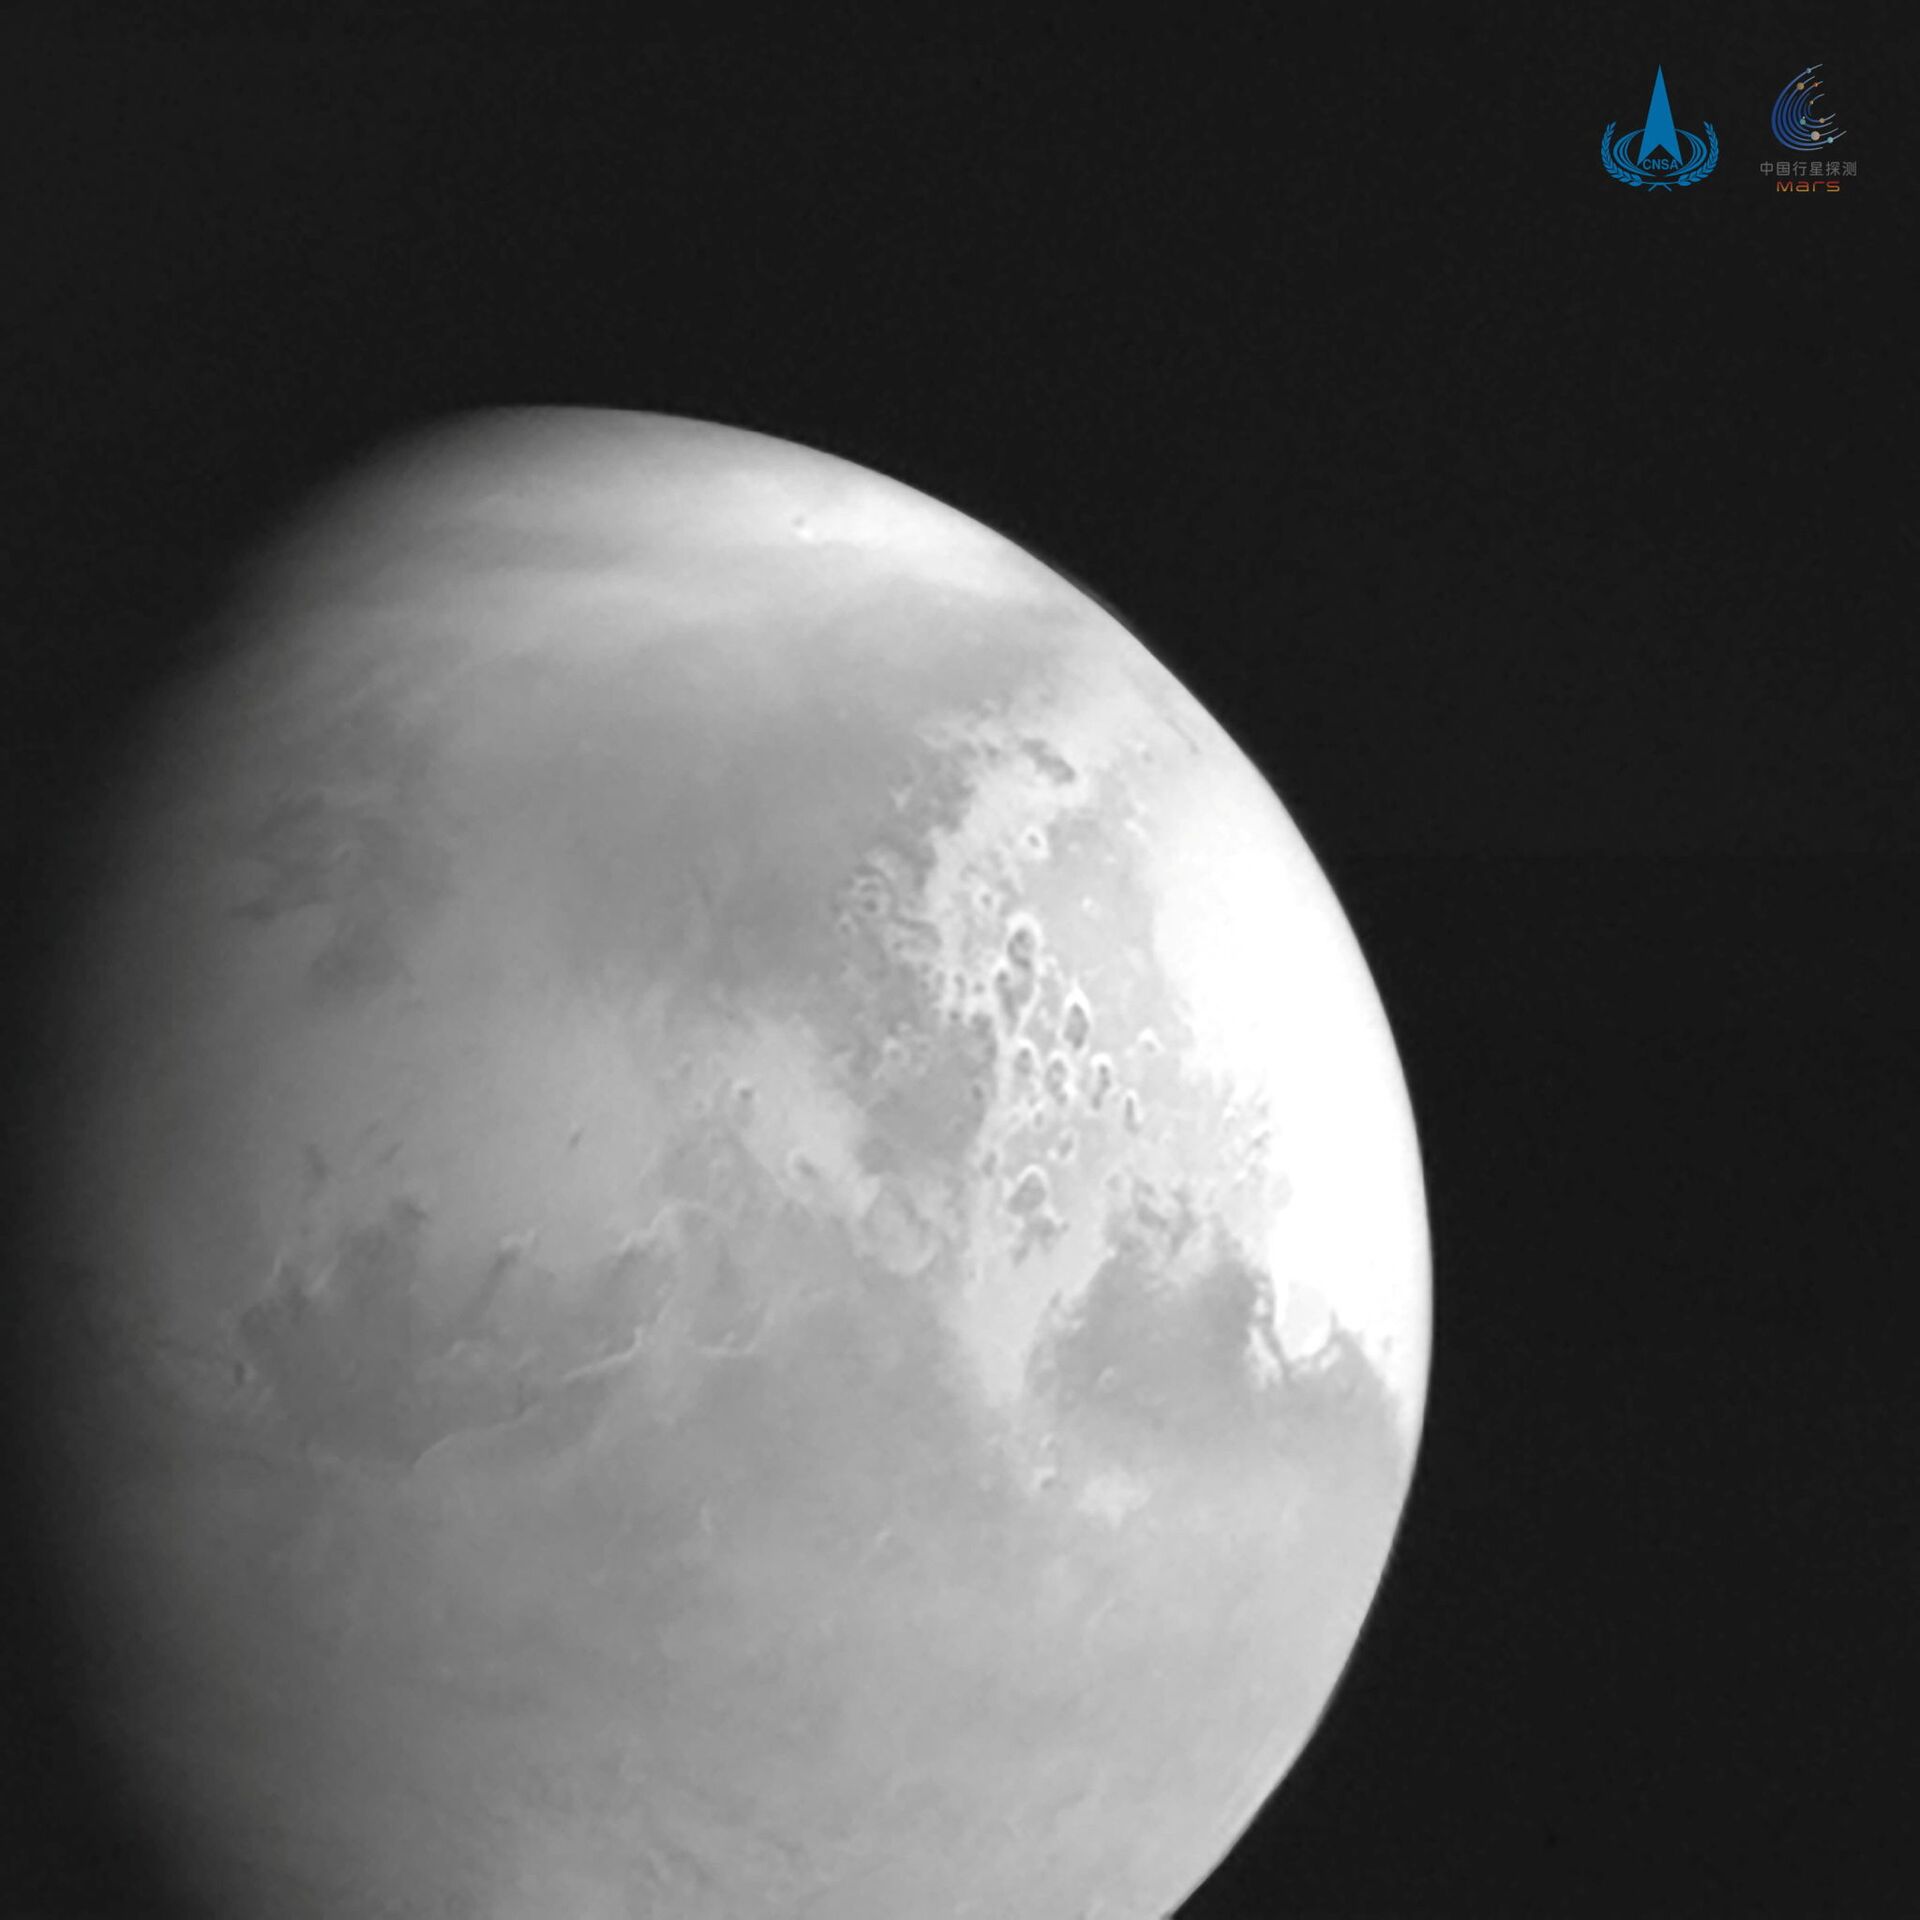 La primera imagen de Marte tomada por la sonda china Tianwen-1 - Sputnik Mundo, 1920, 11.02.2021